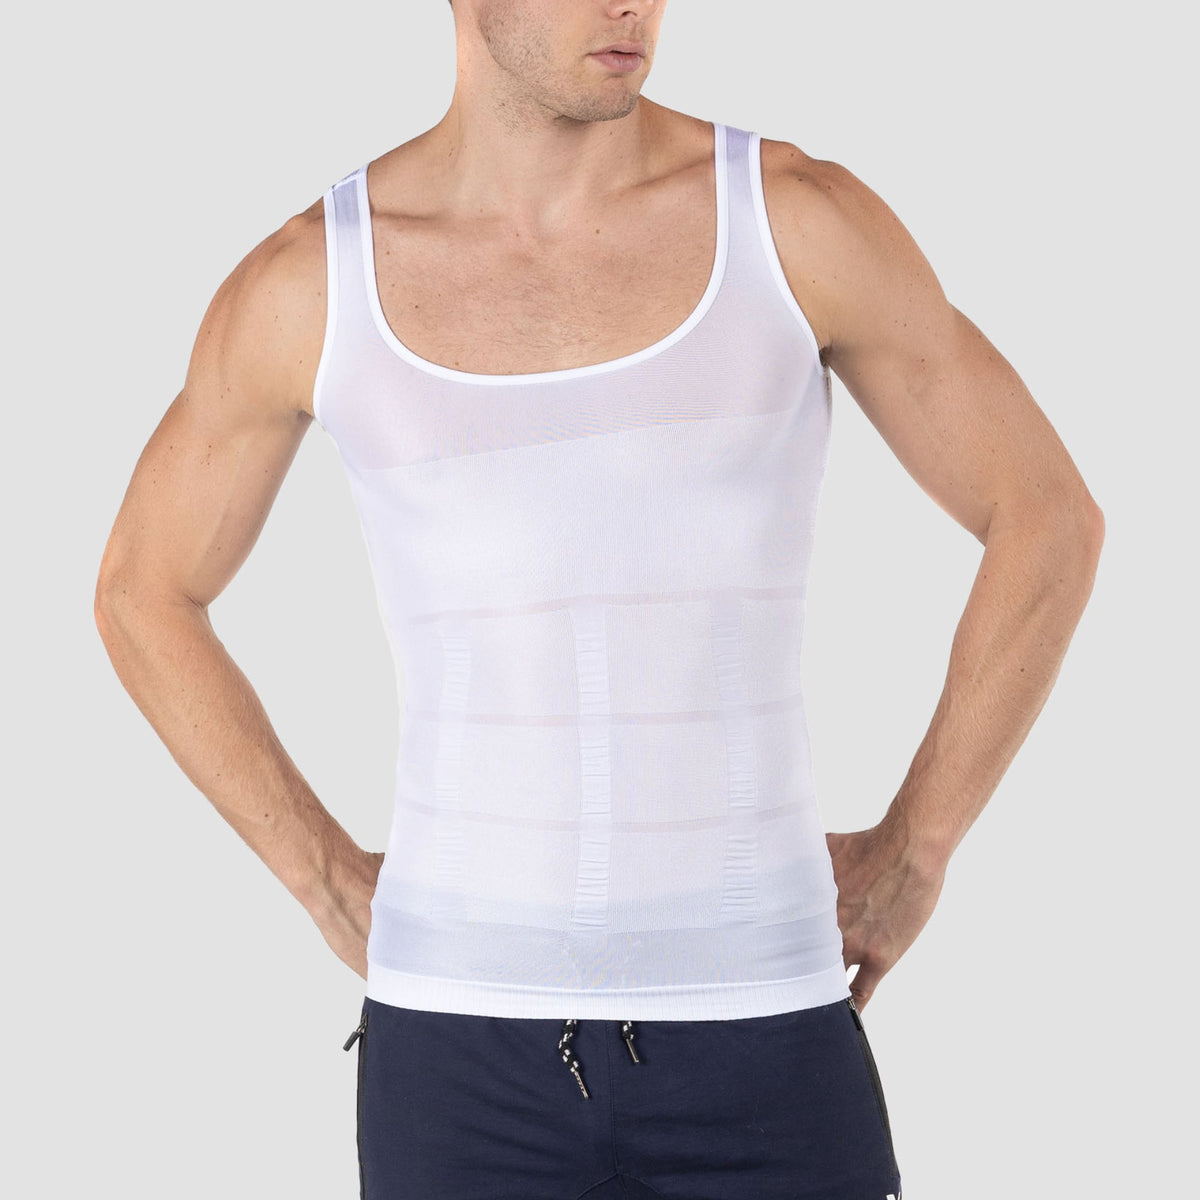 BAGILO Sweat Shapewear Vest Belt for Men, Polymer Shapewear